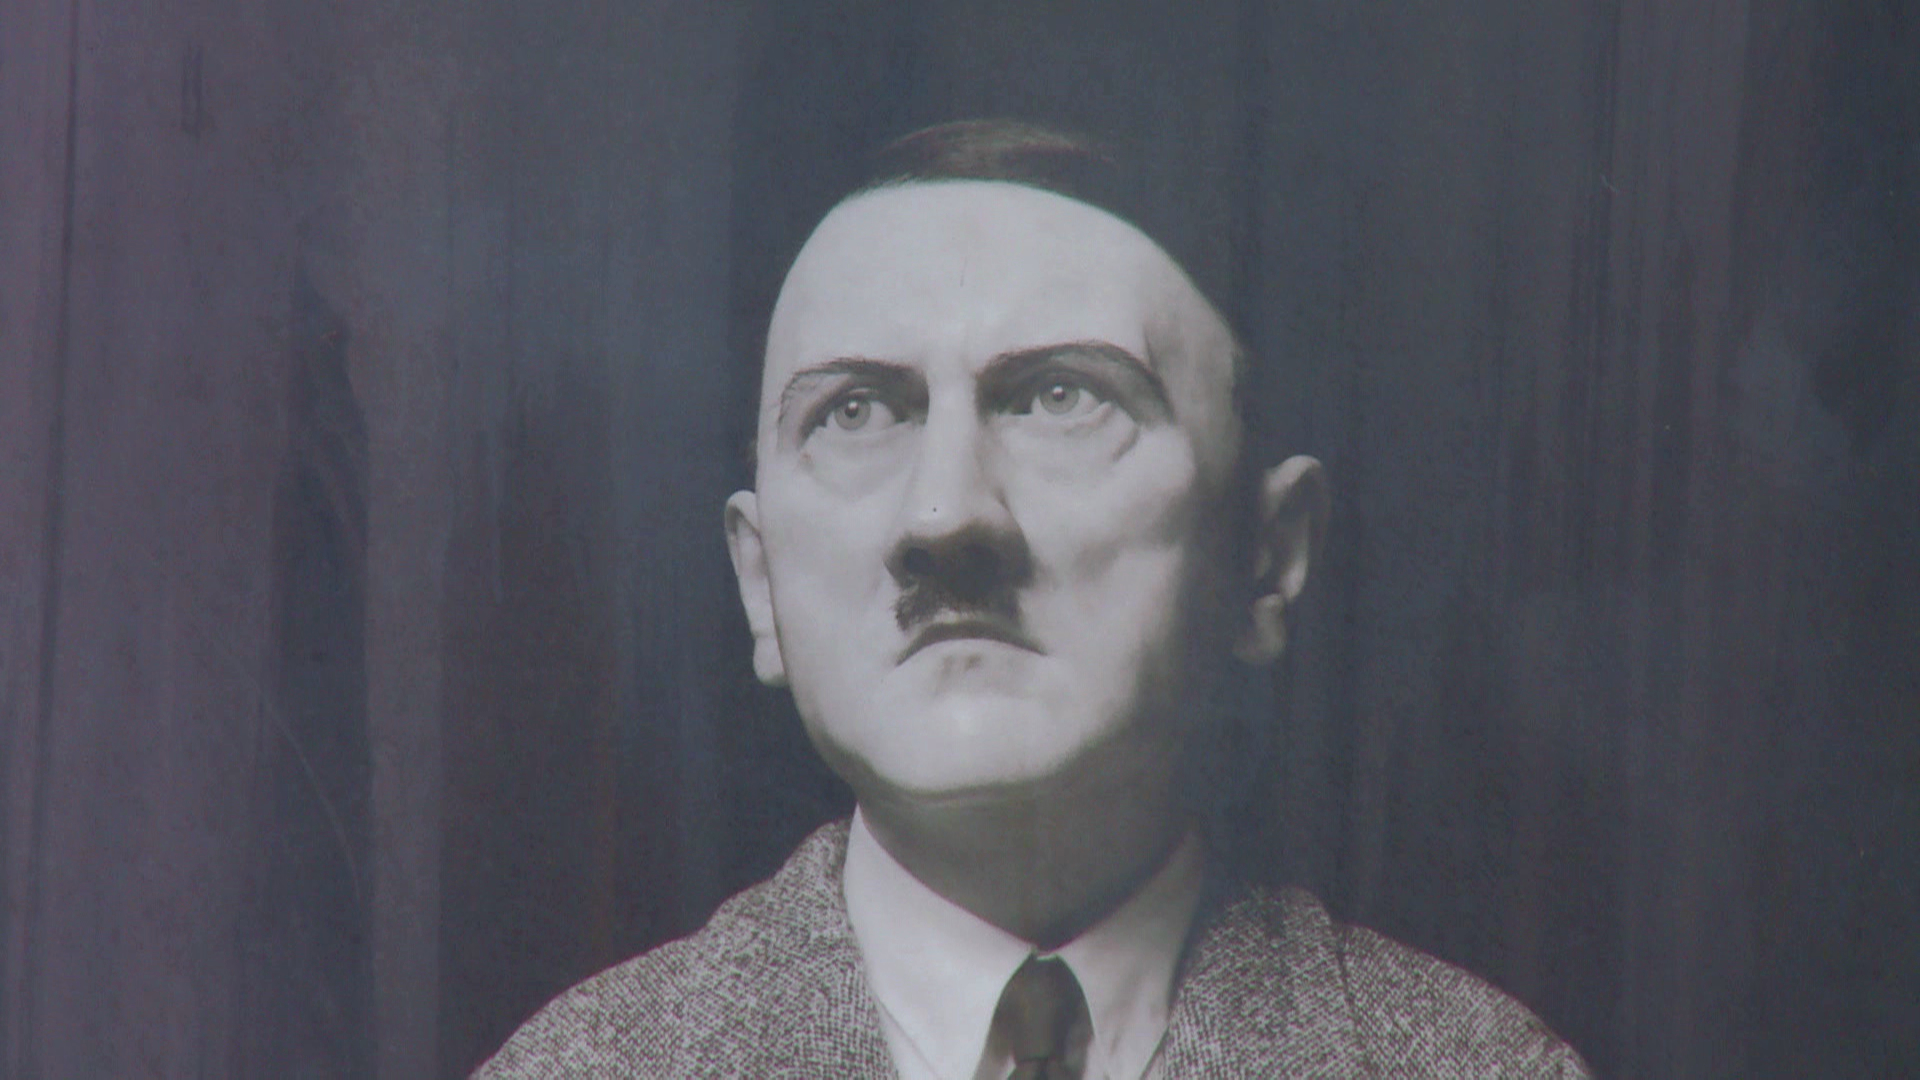 Estatua de Hitler causa polémica (Video)